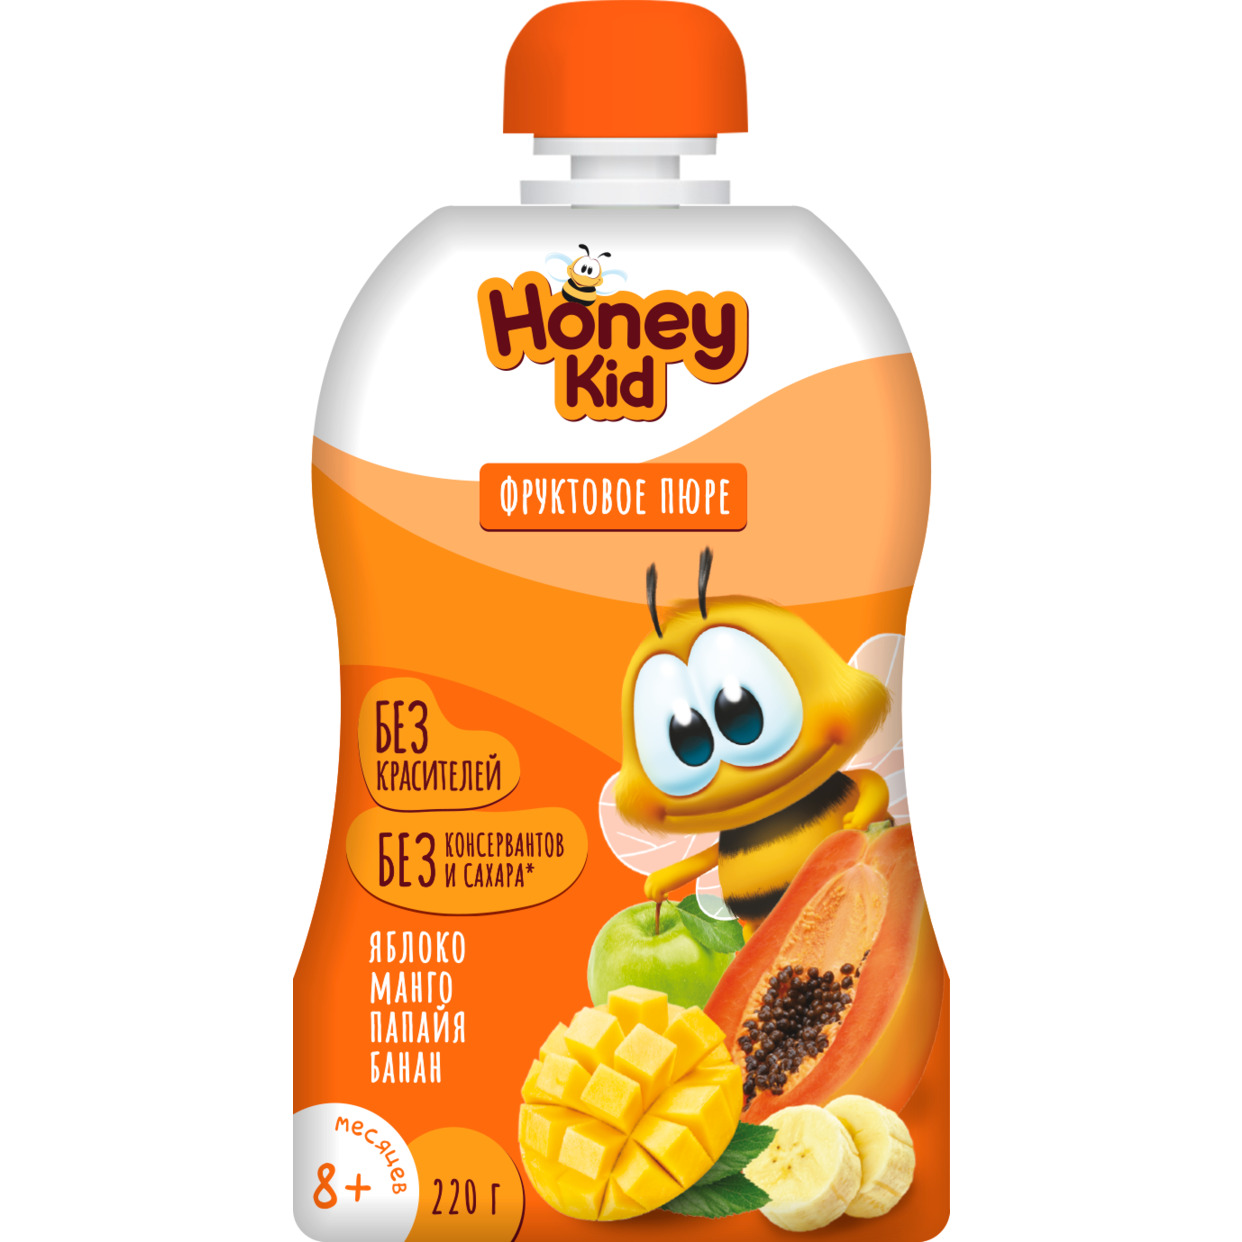 Пюре "Honey Kid" из яблок, манго, папайи и бананов для детского питания для детей раннего возраста гомогенизированное, стерилизованн ое, 220 г с 8 месяцев